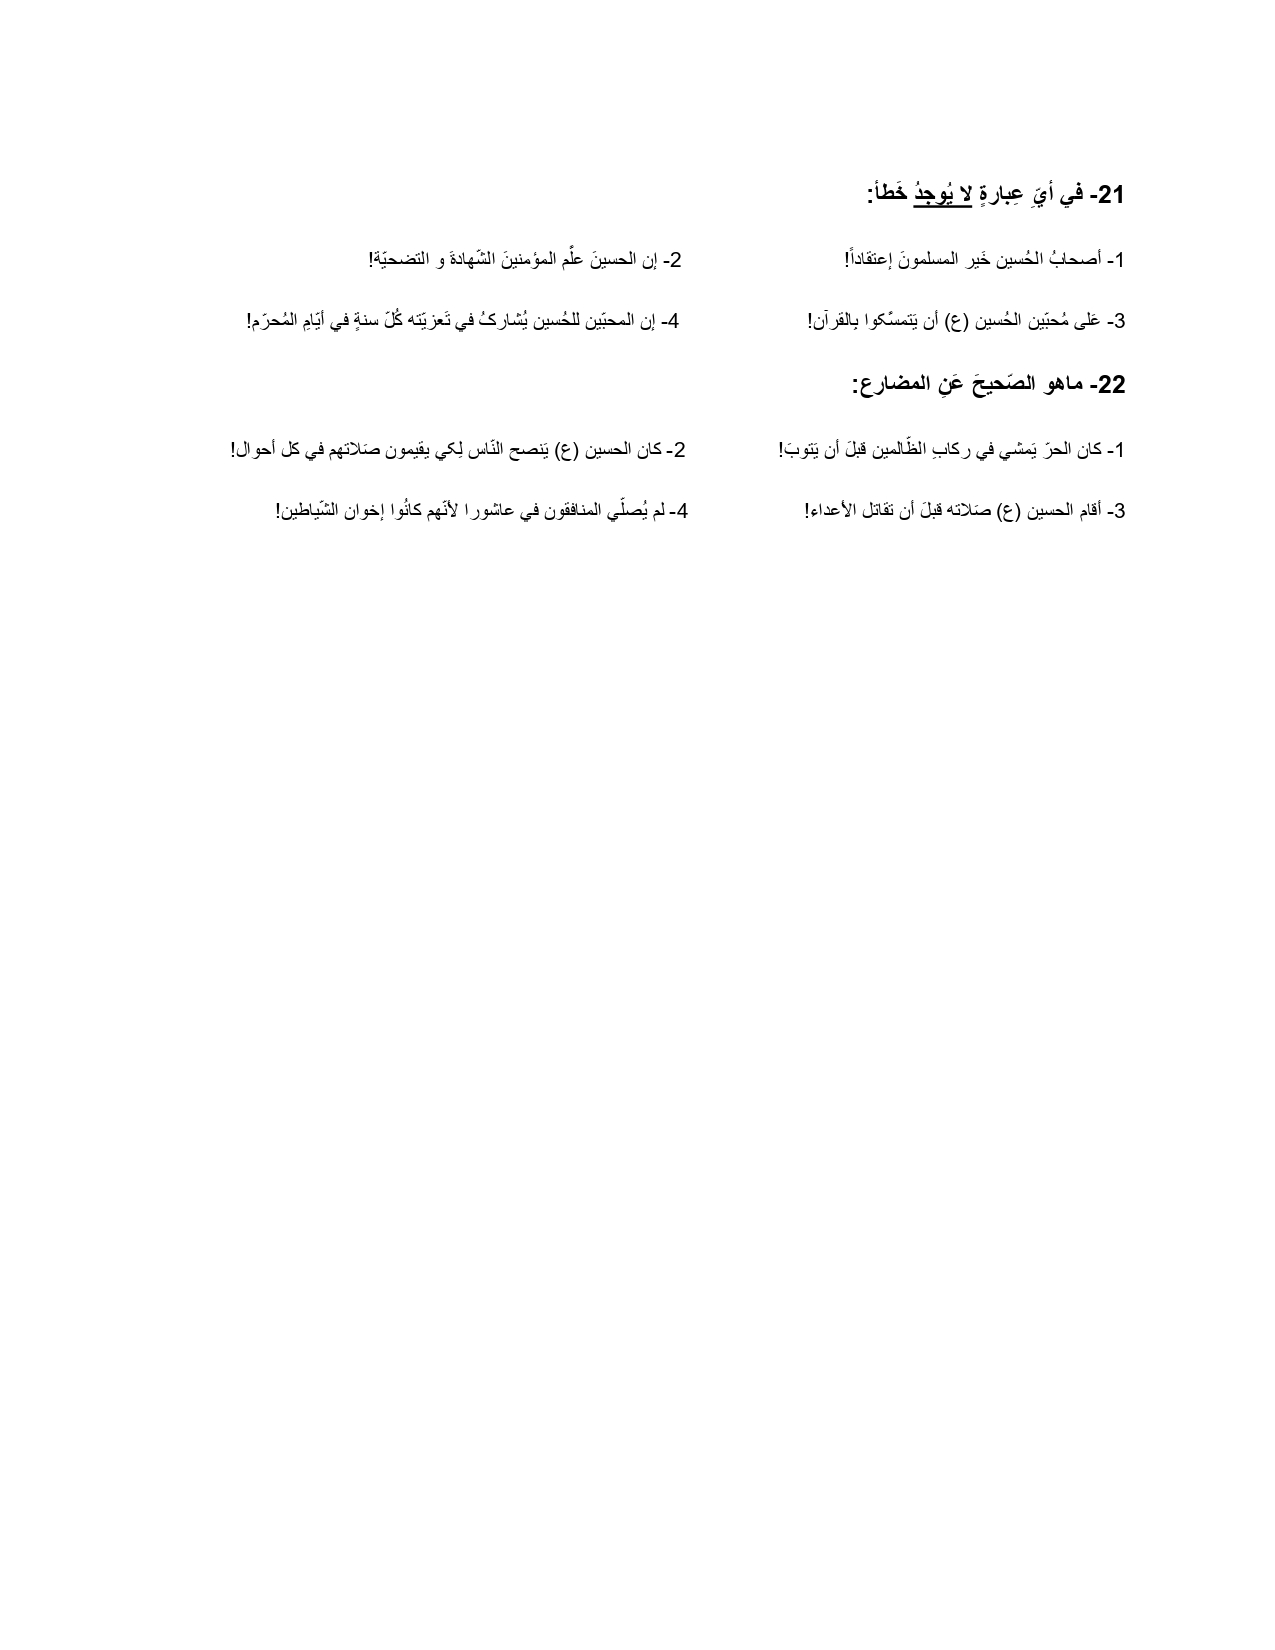 نمونه سوال عربی حروف مشبهه + جواب 1